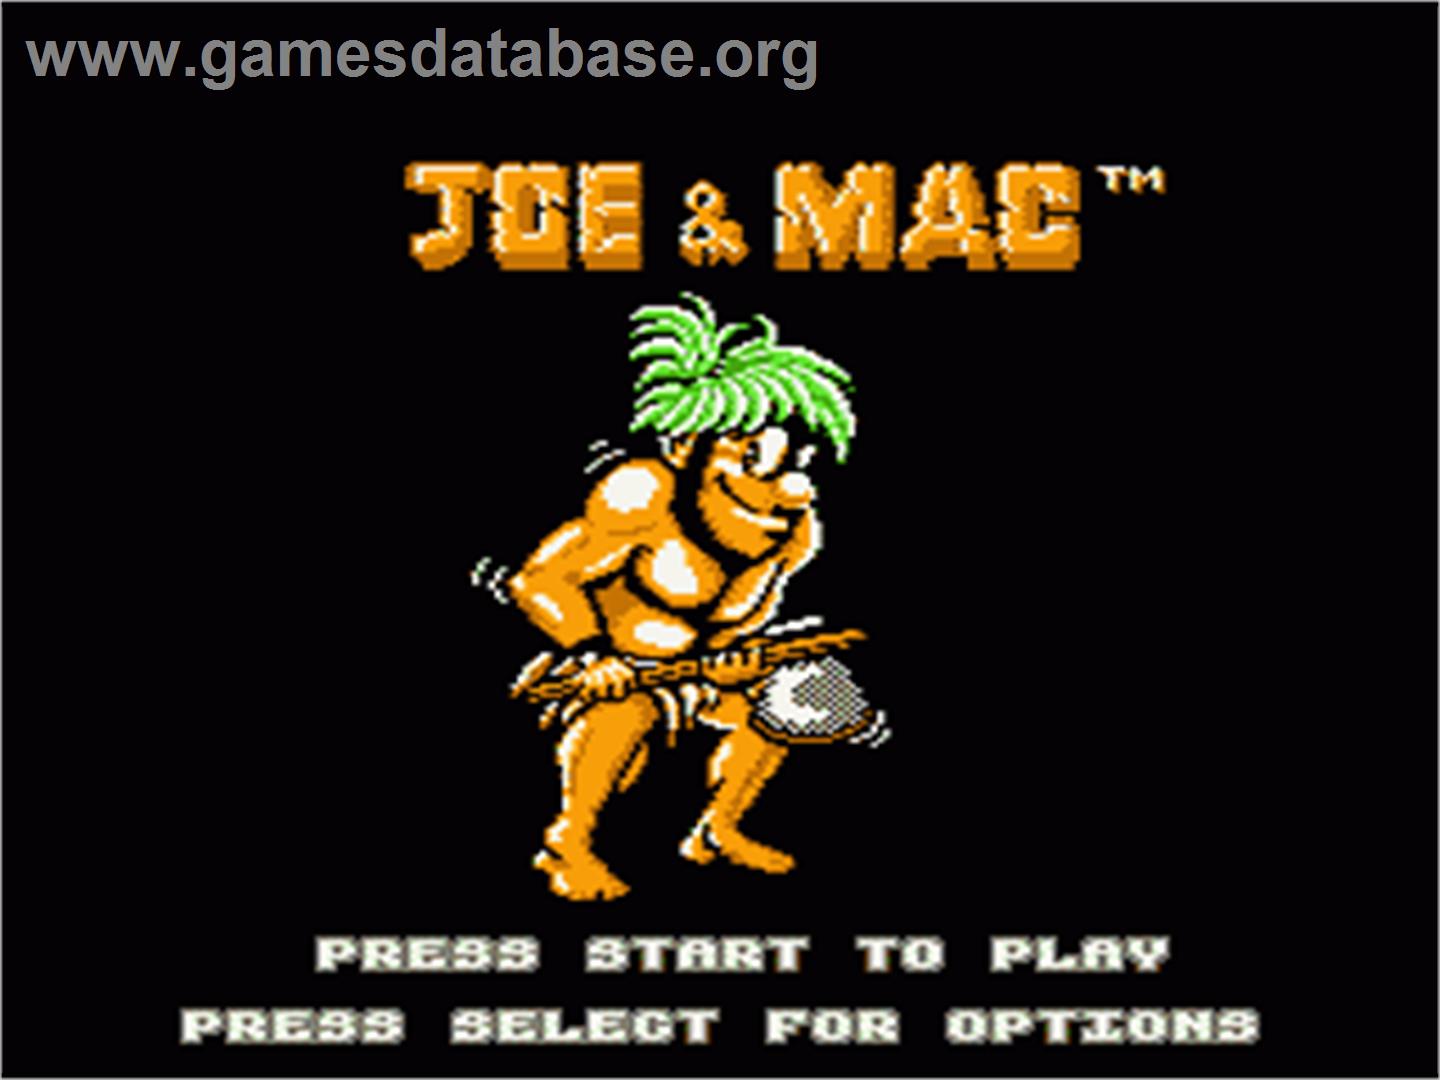 Joe & Mac: Caveman Ninja - Nintendo NES - Artwork - Title Screen